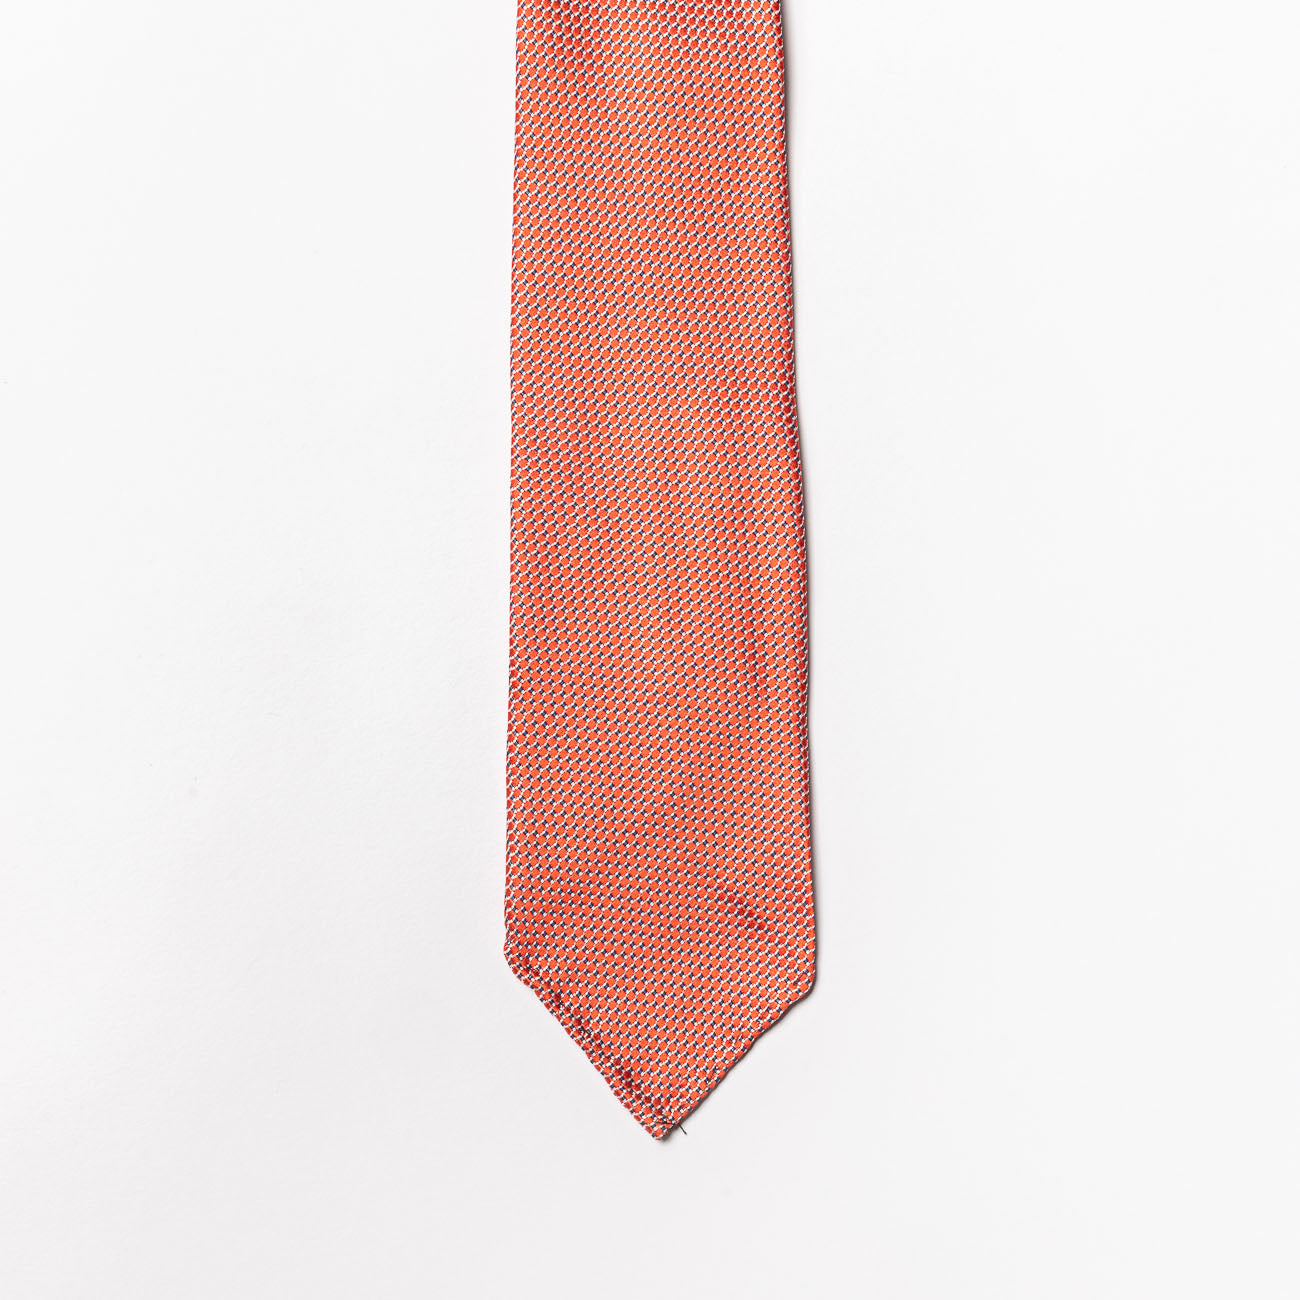 Cravatta sfoderata Tailor’s and Ties in seta arancione